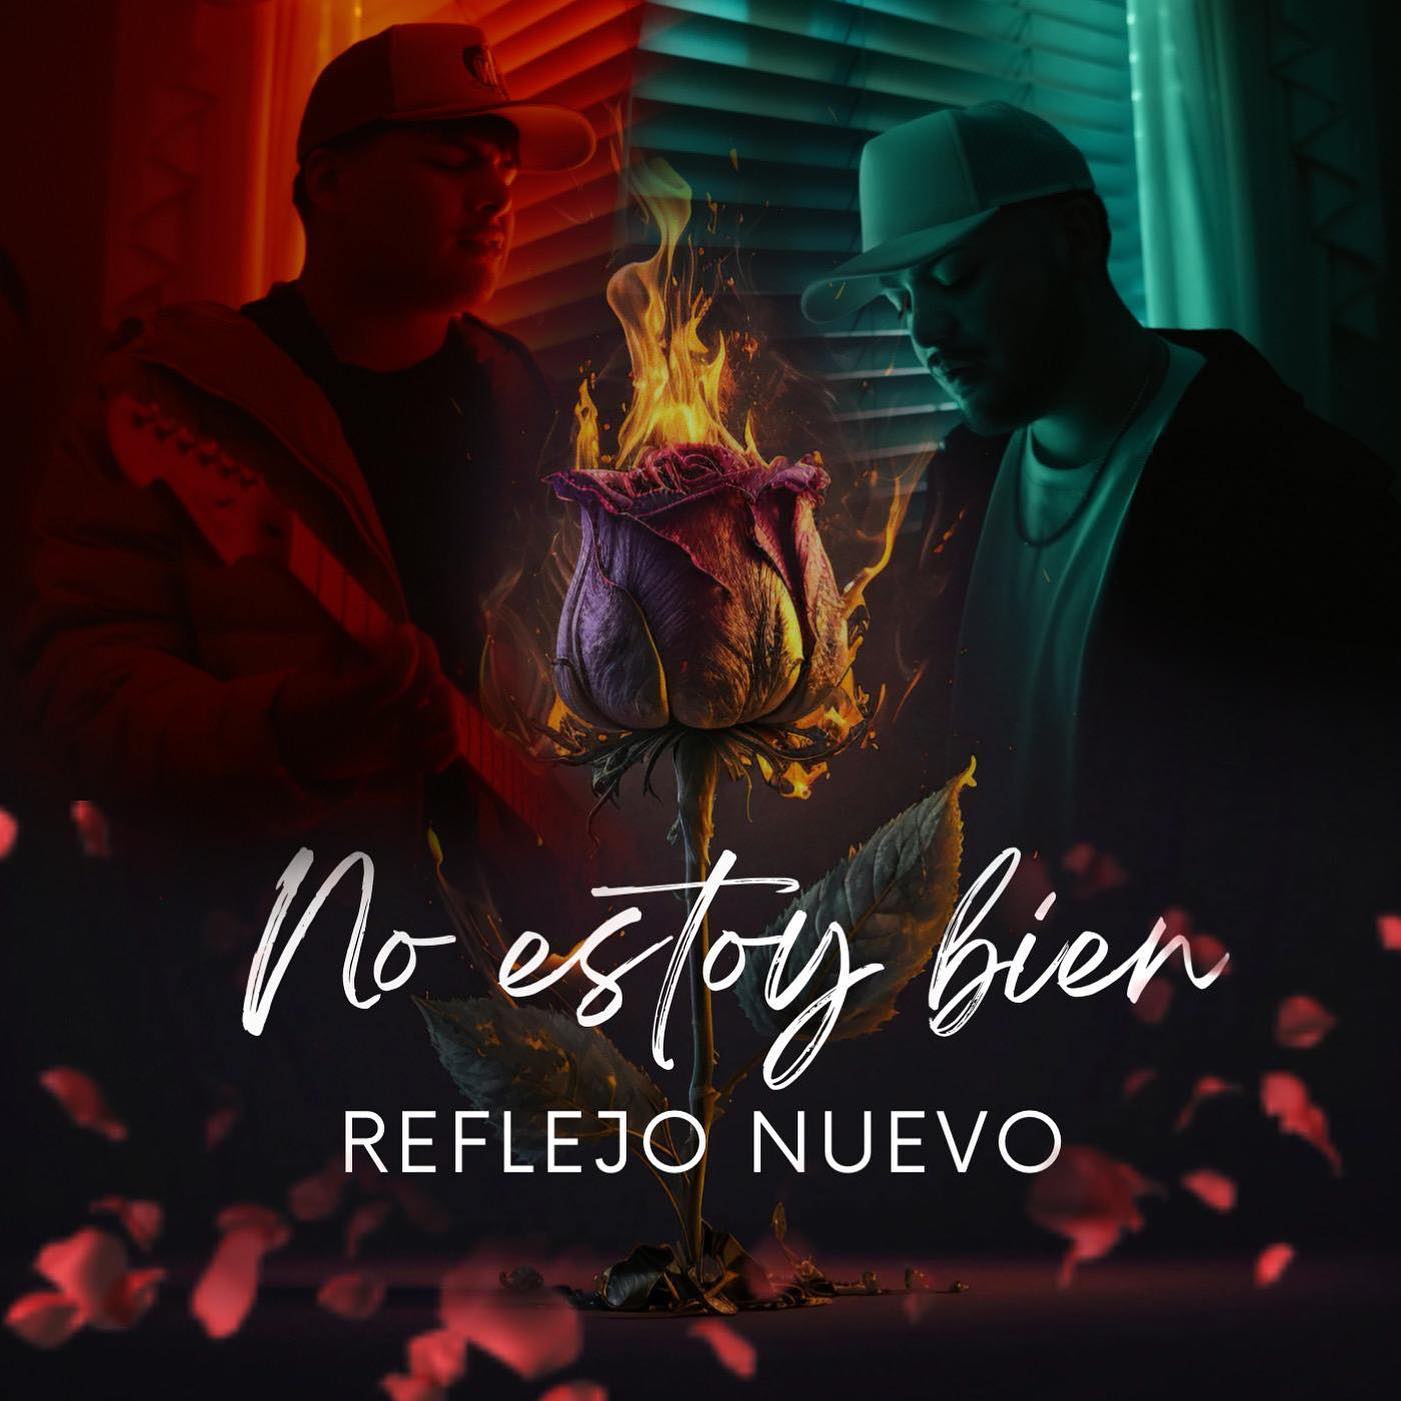 Reflejo Nuevo lanzó su sencillo “No estoy bien”